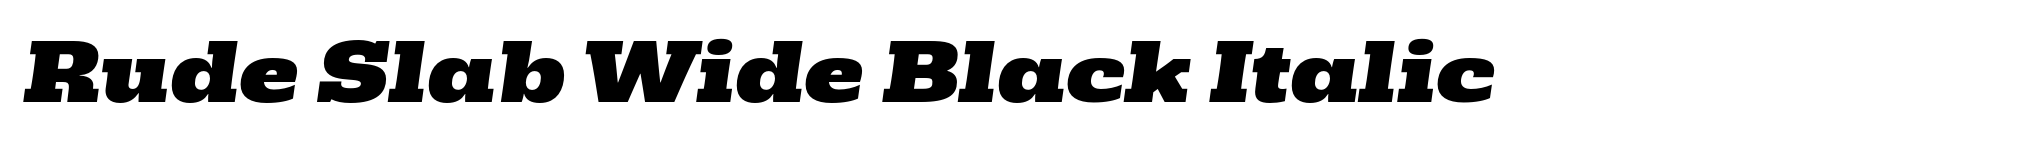 Rude Slab Wide Black Italic image